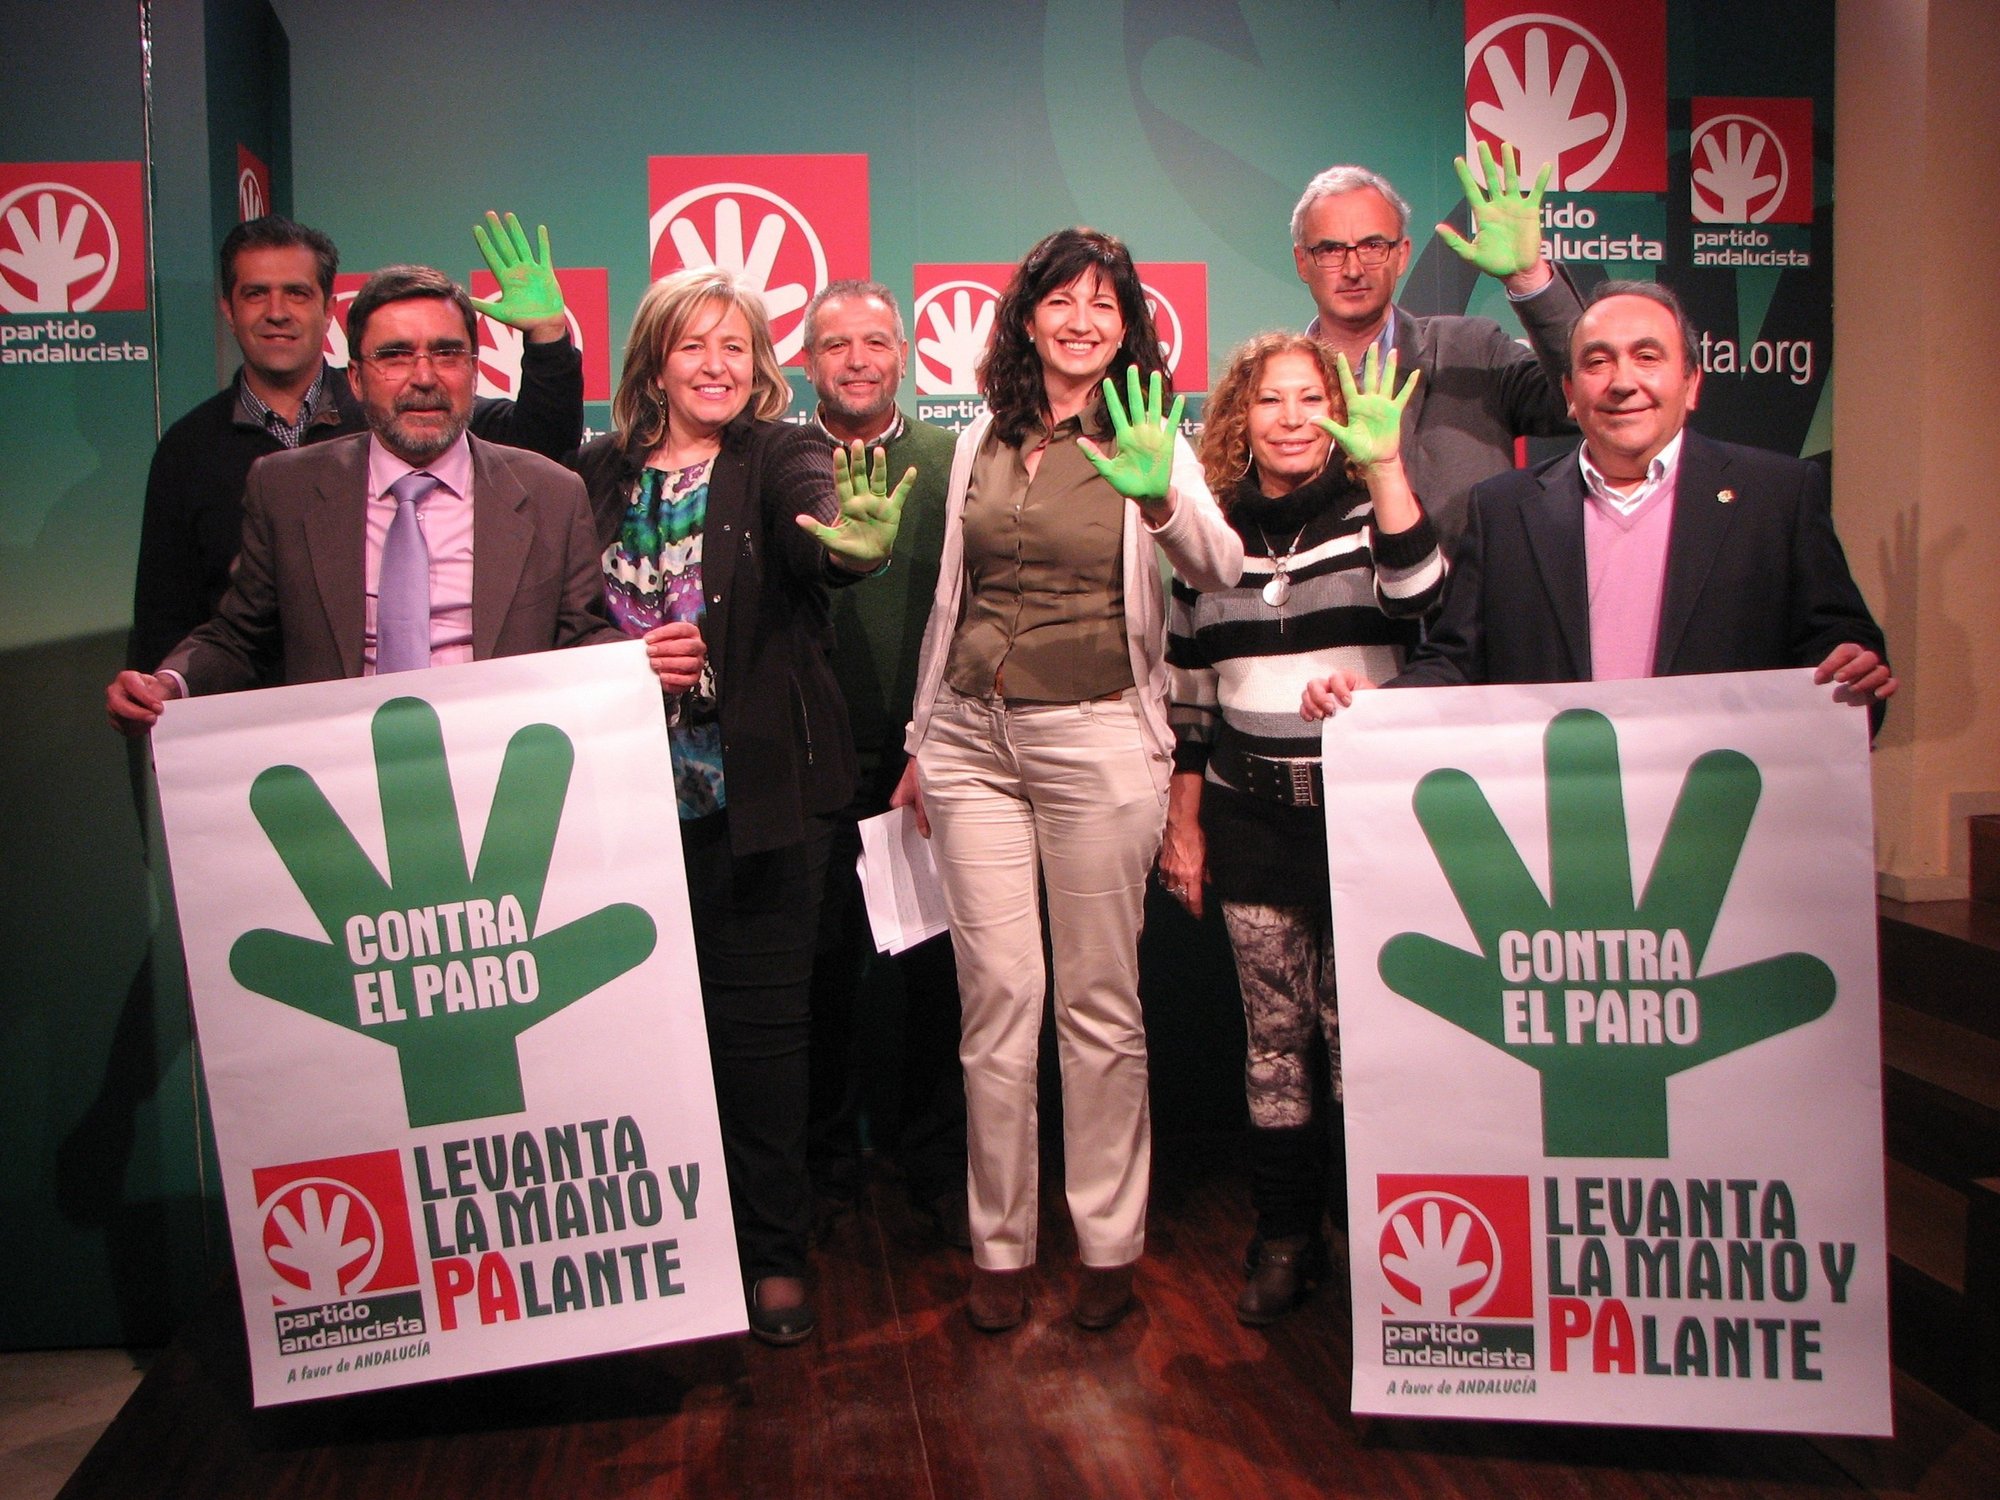 El Partido Andalucista se movilizará contra el paro en la Moncloa y organizará «marchas urbanas»